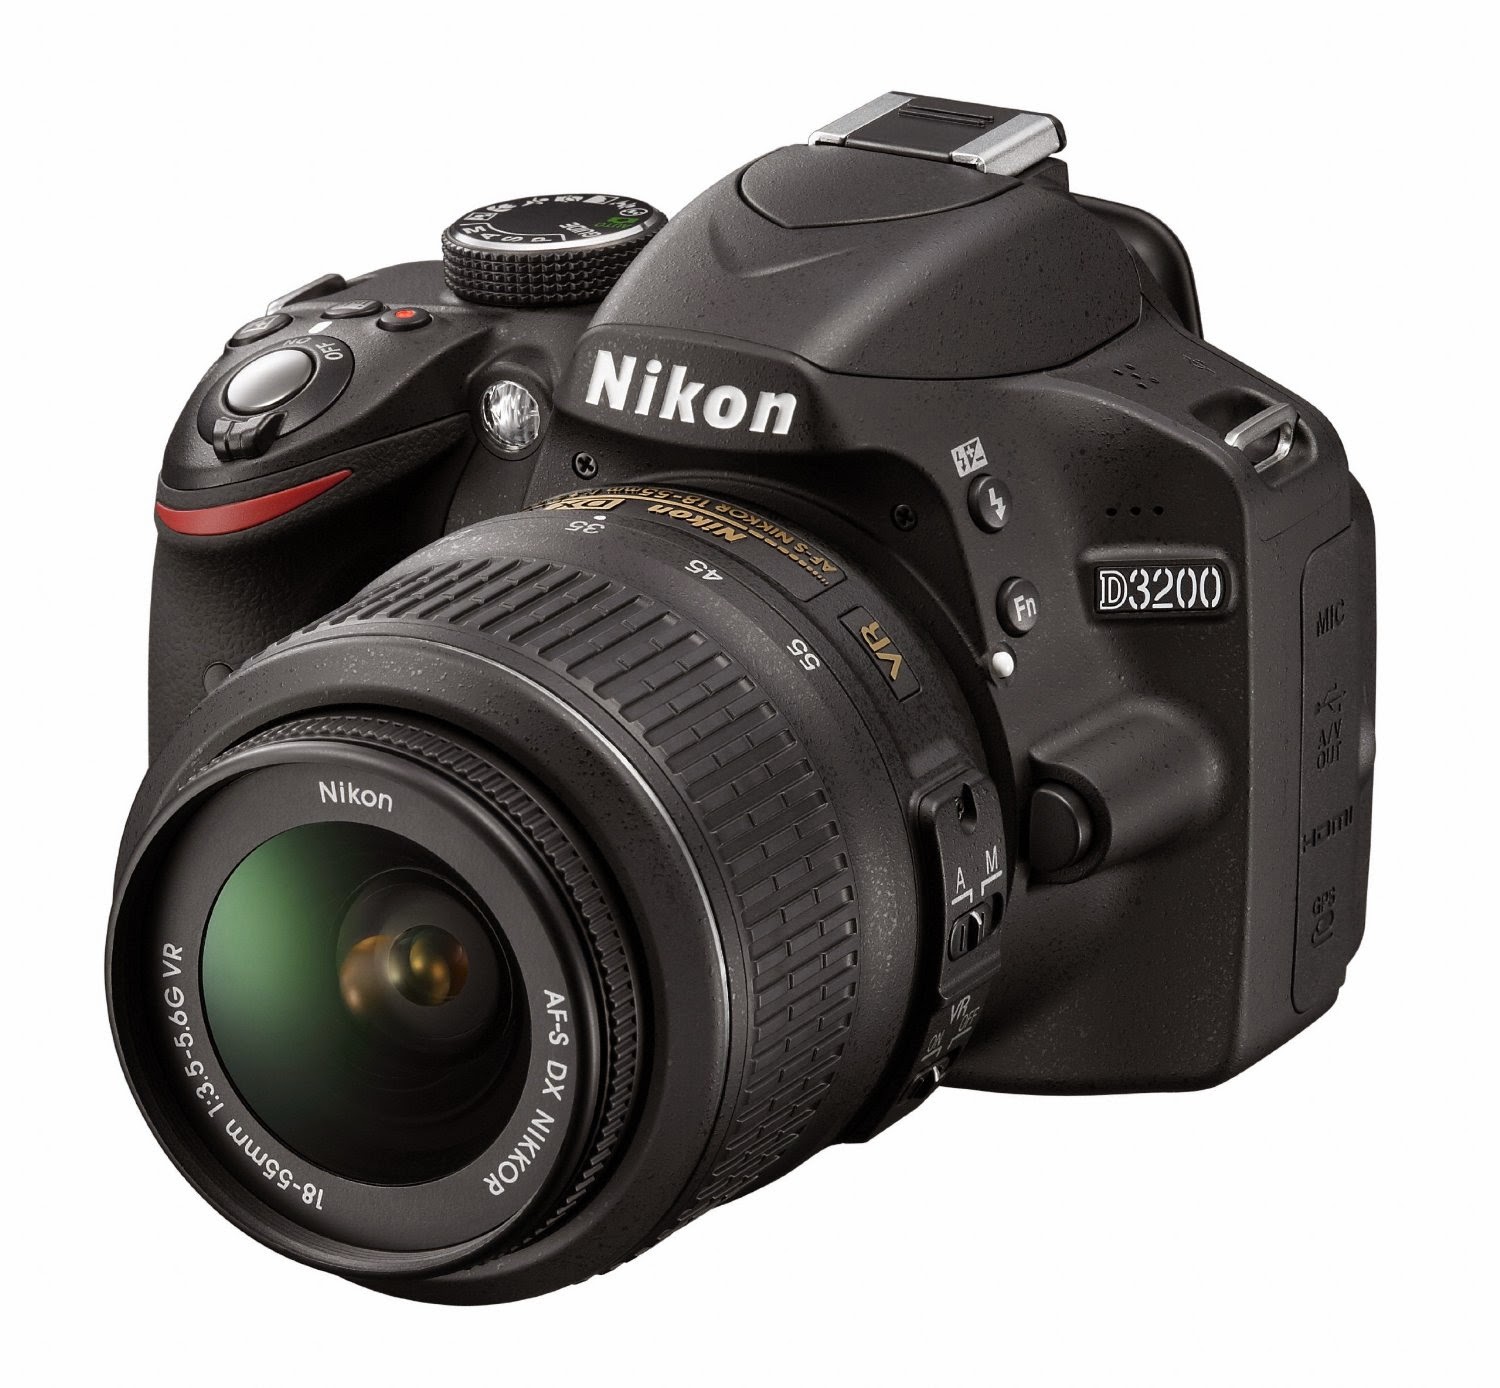 Nikon D3200 24MP CMOS DX-format DSLR camera, review plus compare with Nikon D3300, ideal entry-level DSLR cameras